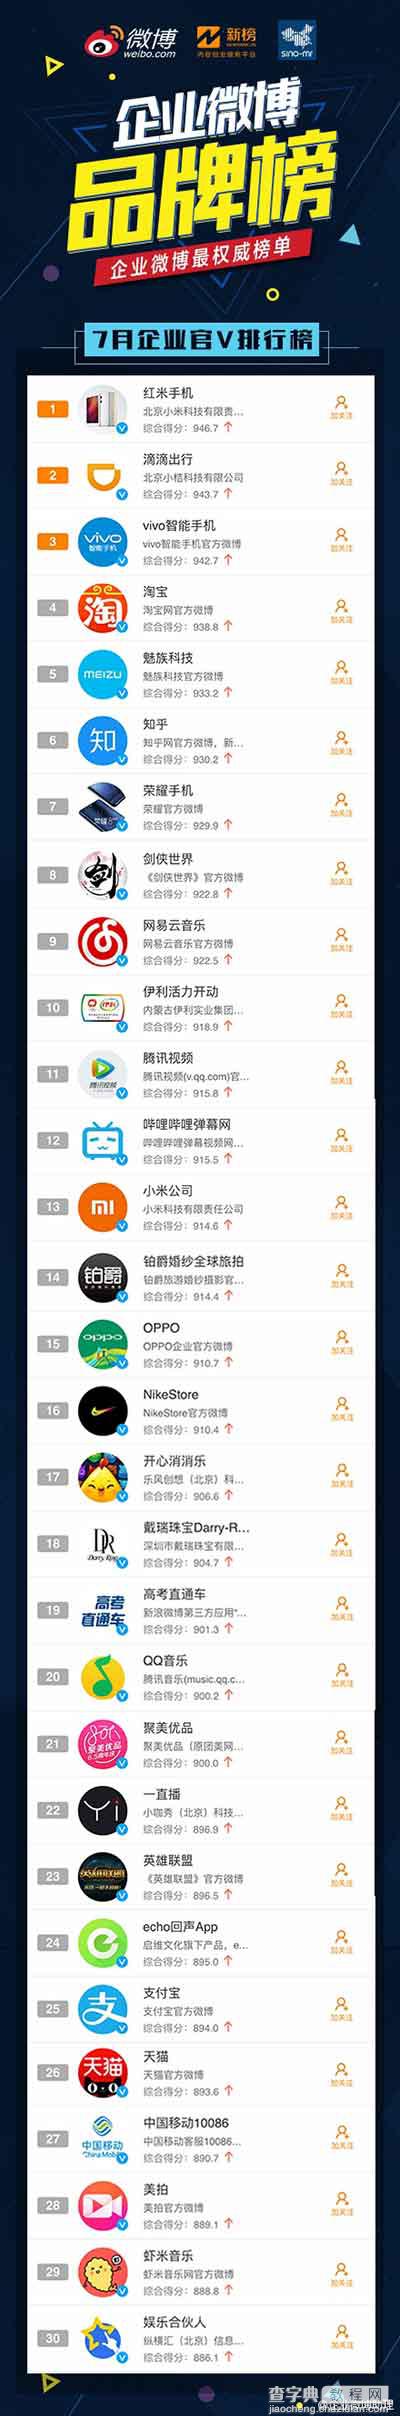 2016.7月企业手机微博品牌榜发布:小米第一4